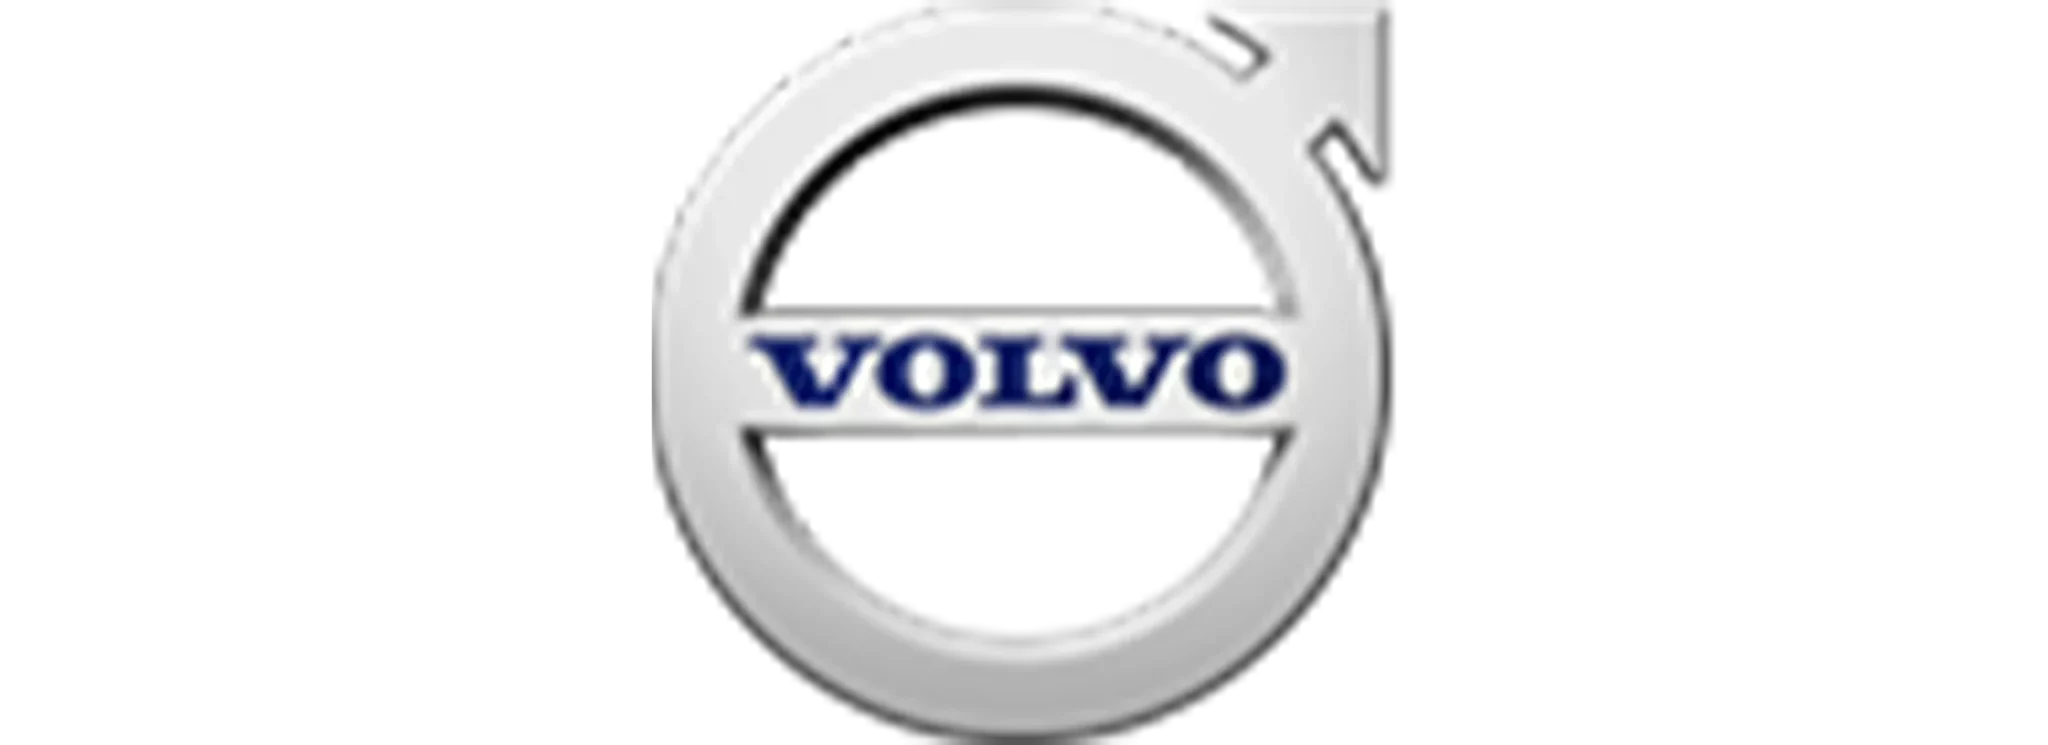 Volvo-Equipamentos-de-Construcao-Latin-Americ-scaled.webp